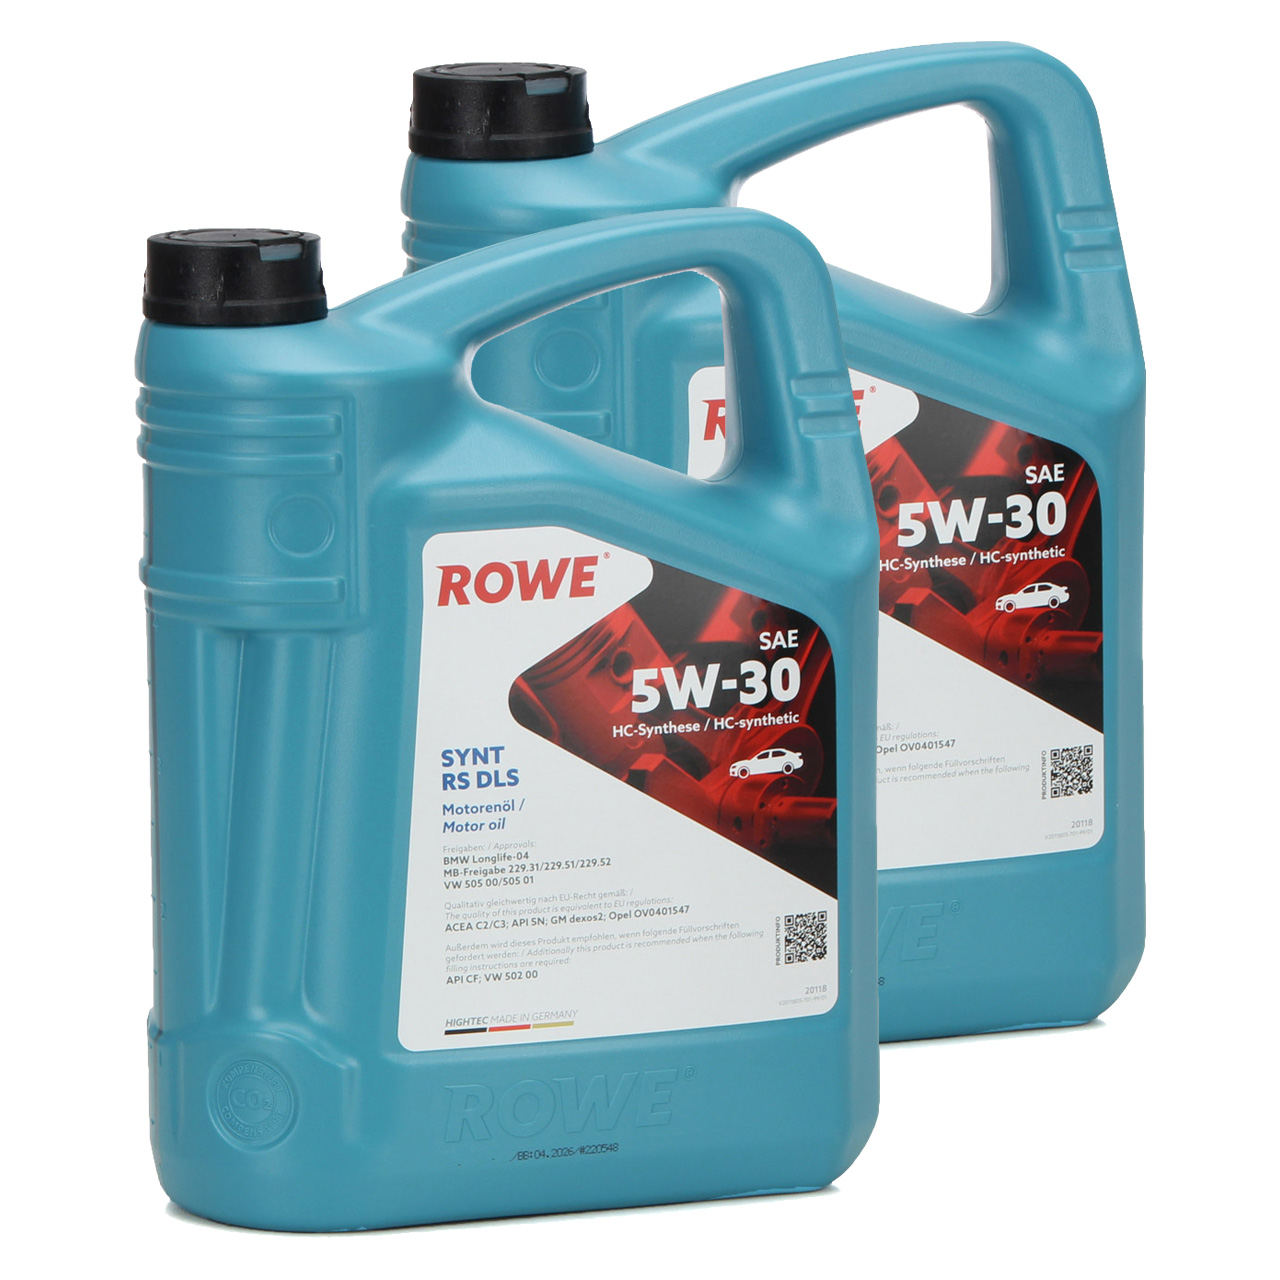 10L 10 Liter ROWE SYNT RS DLS 5W-30 Motoröl Öl BMW LL-04 MB 229.31/51/52 VW 505.00/505.01